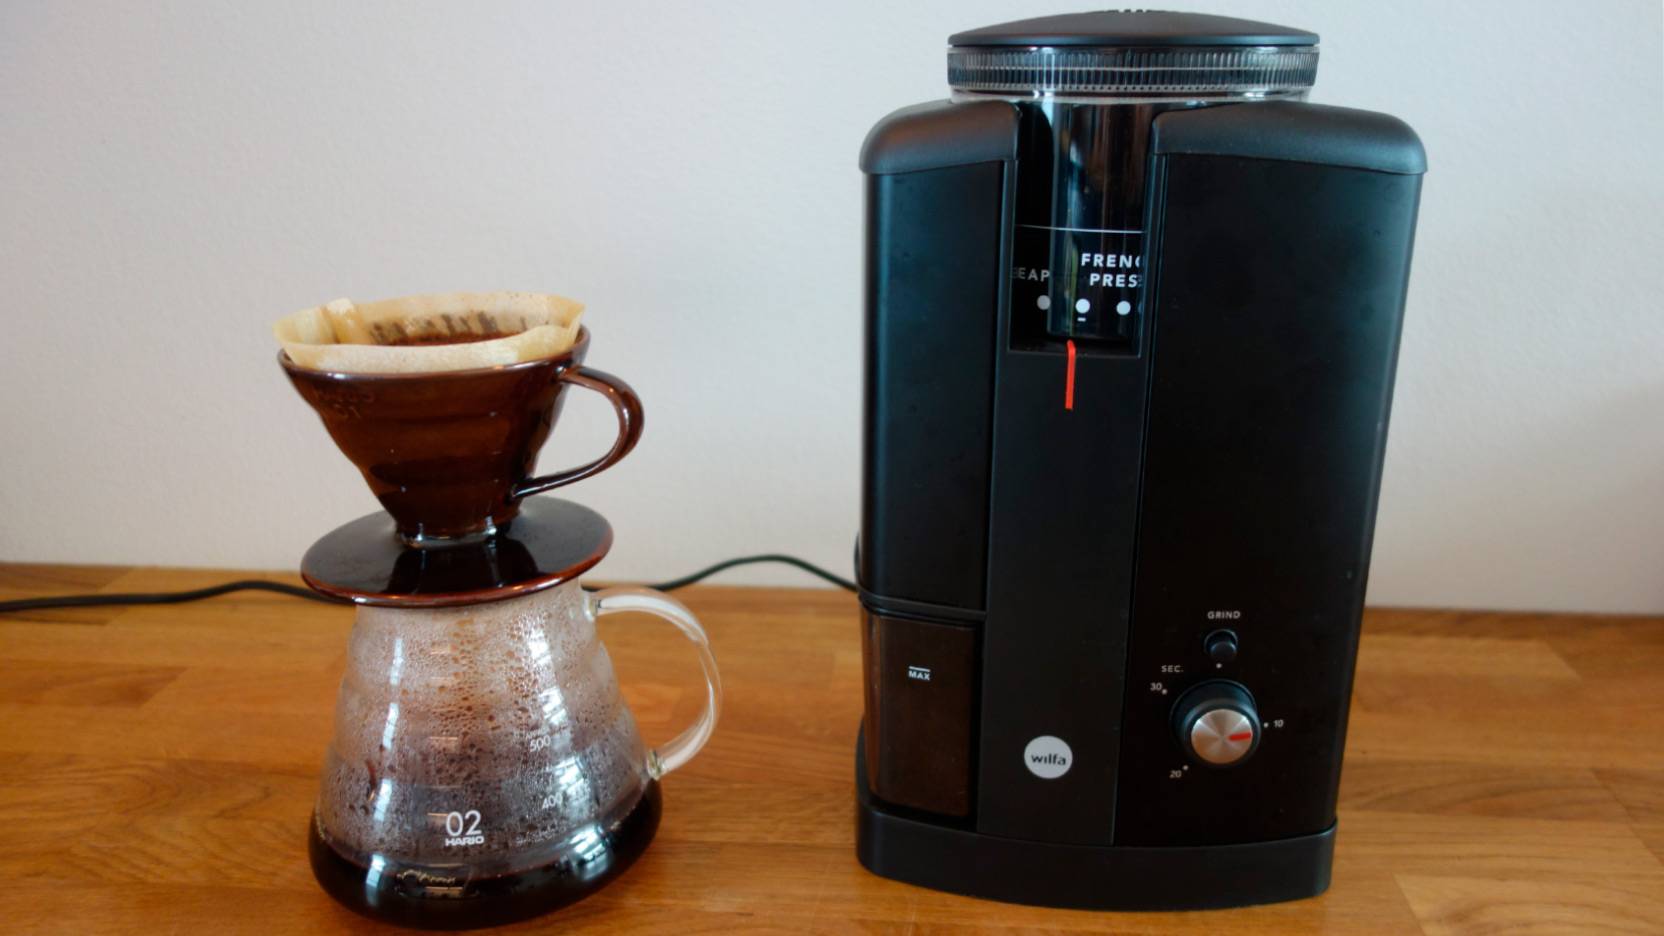 Test: Best coffee grinder 2022 – see the 11 tested coffee grinders